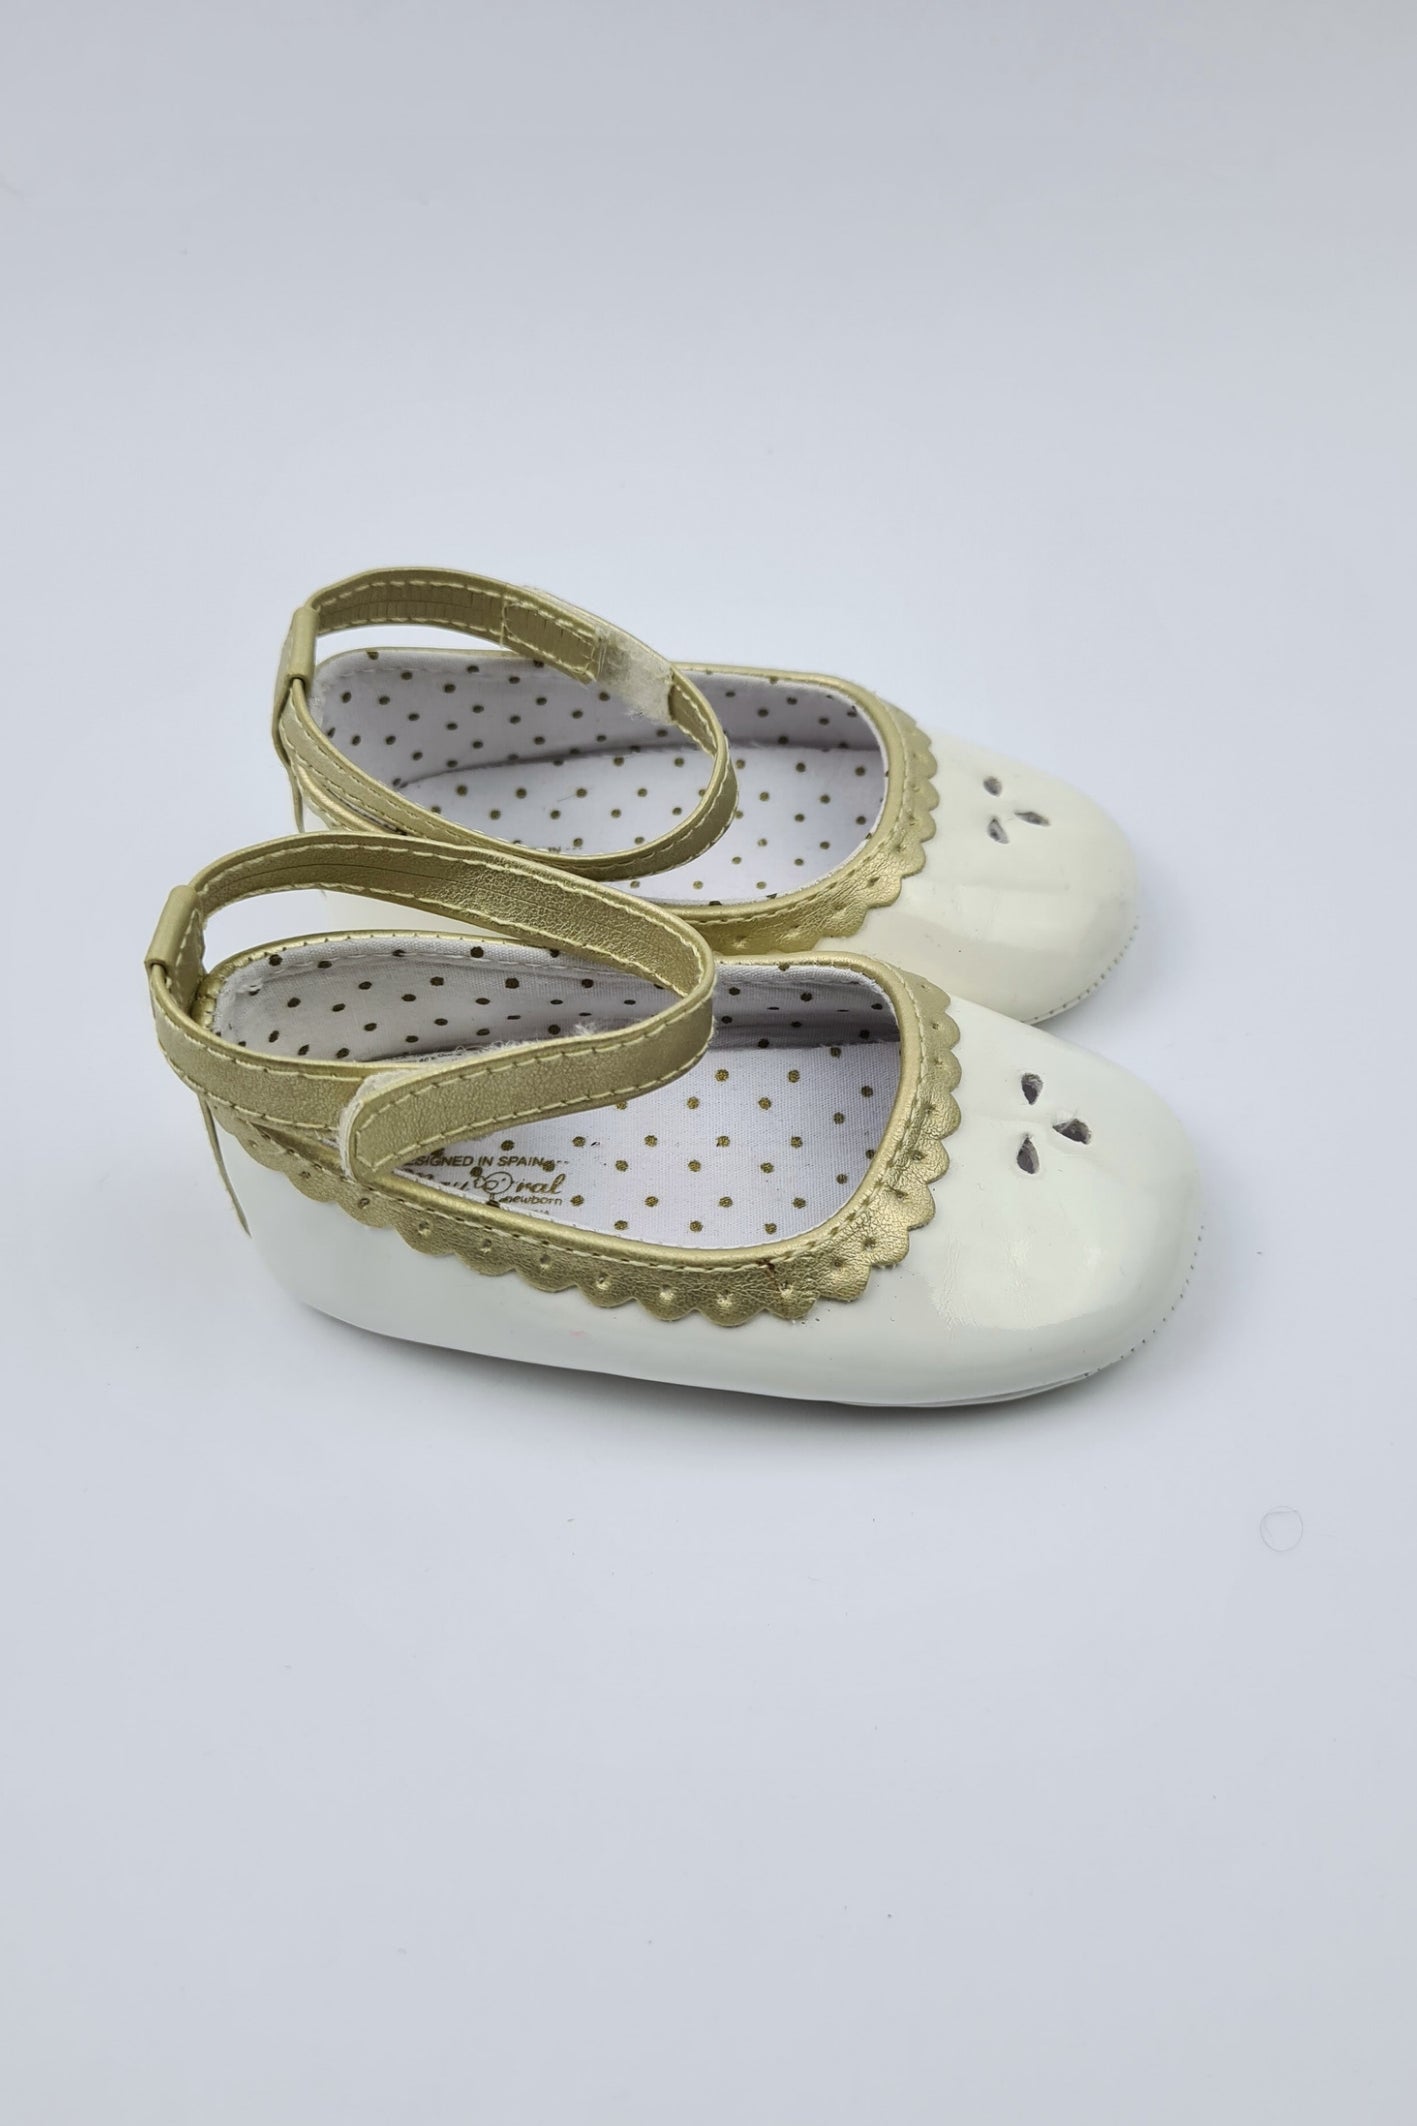 Taille 19 - Chaussures Bébé Crème/Blanc Et Doré (Mayoral